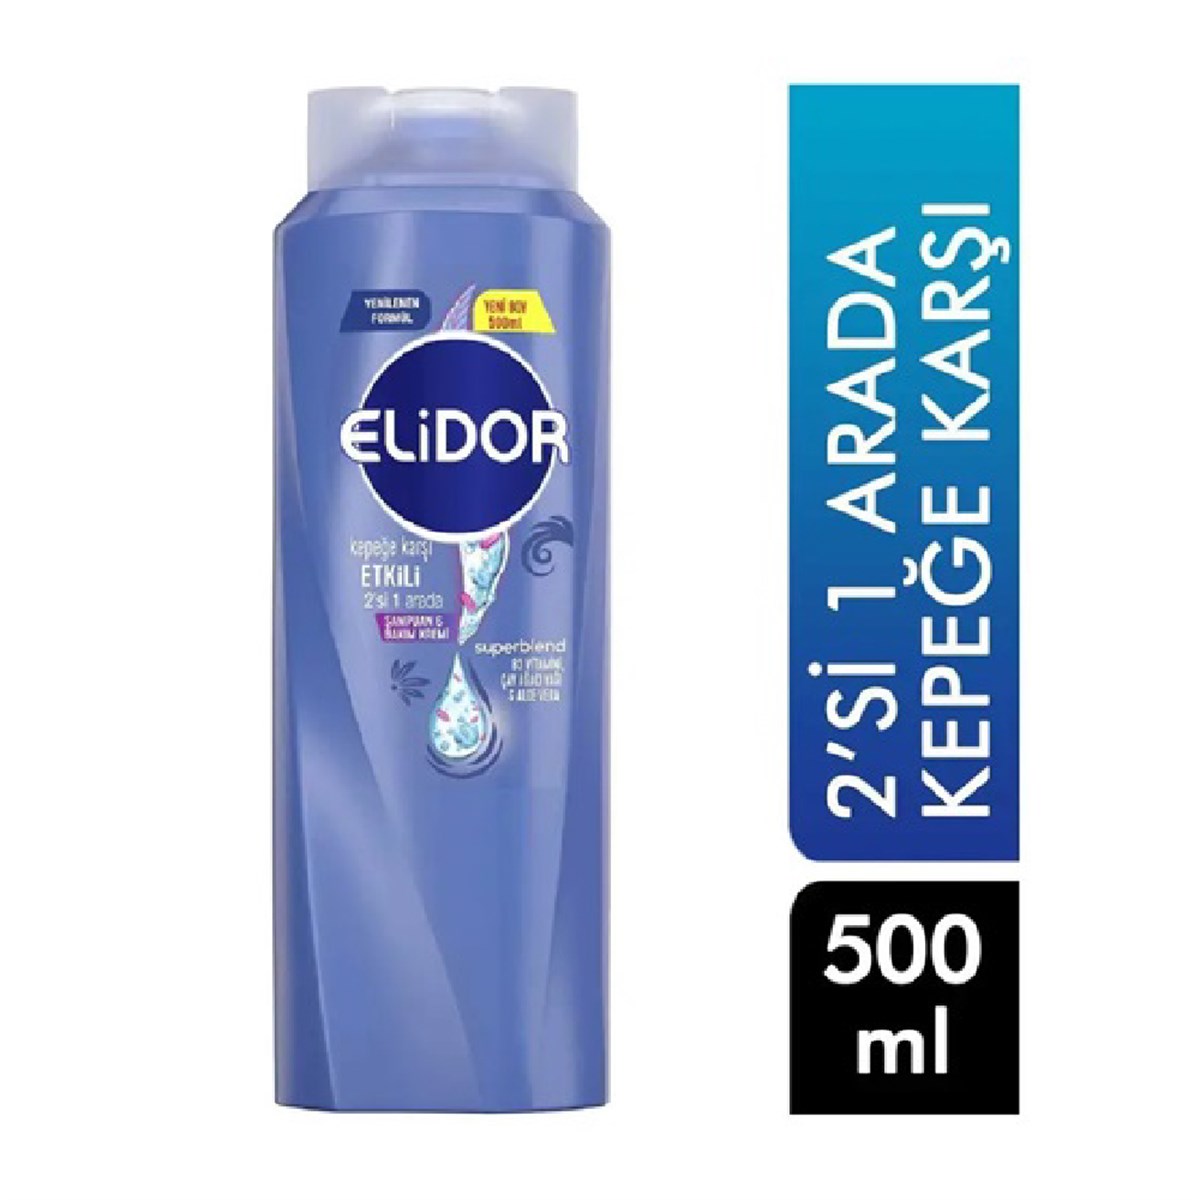 Elidor Şampuan Kepeğe Karşı 2in1 500ml - Platin